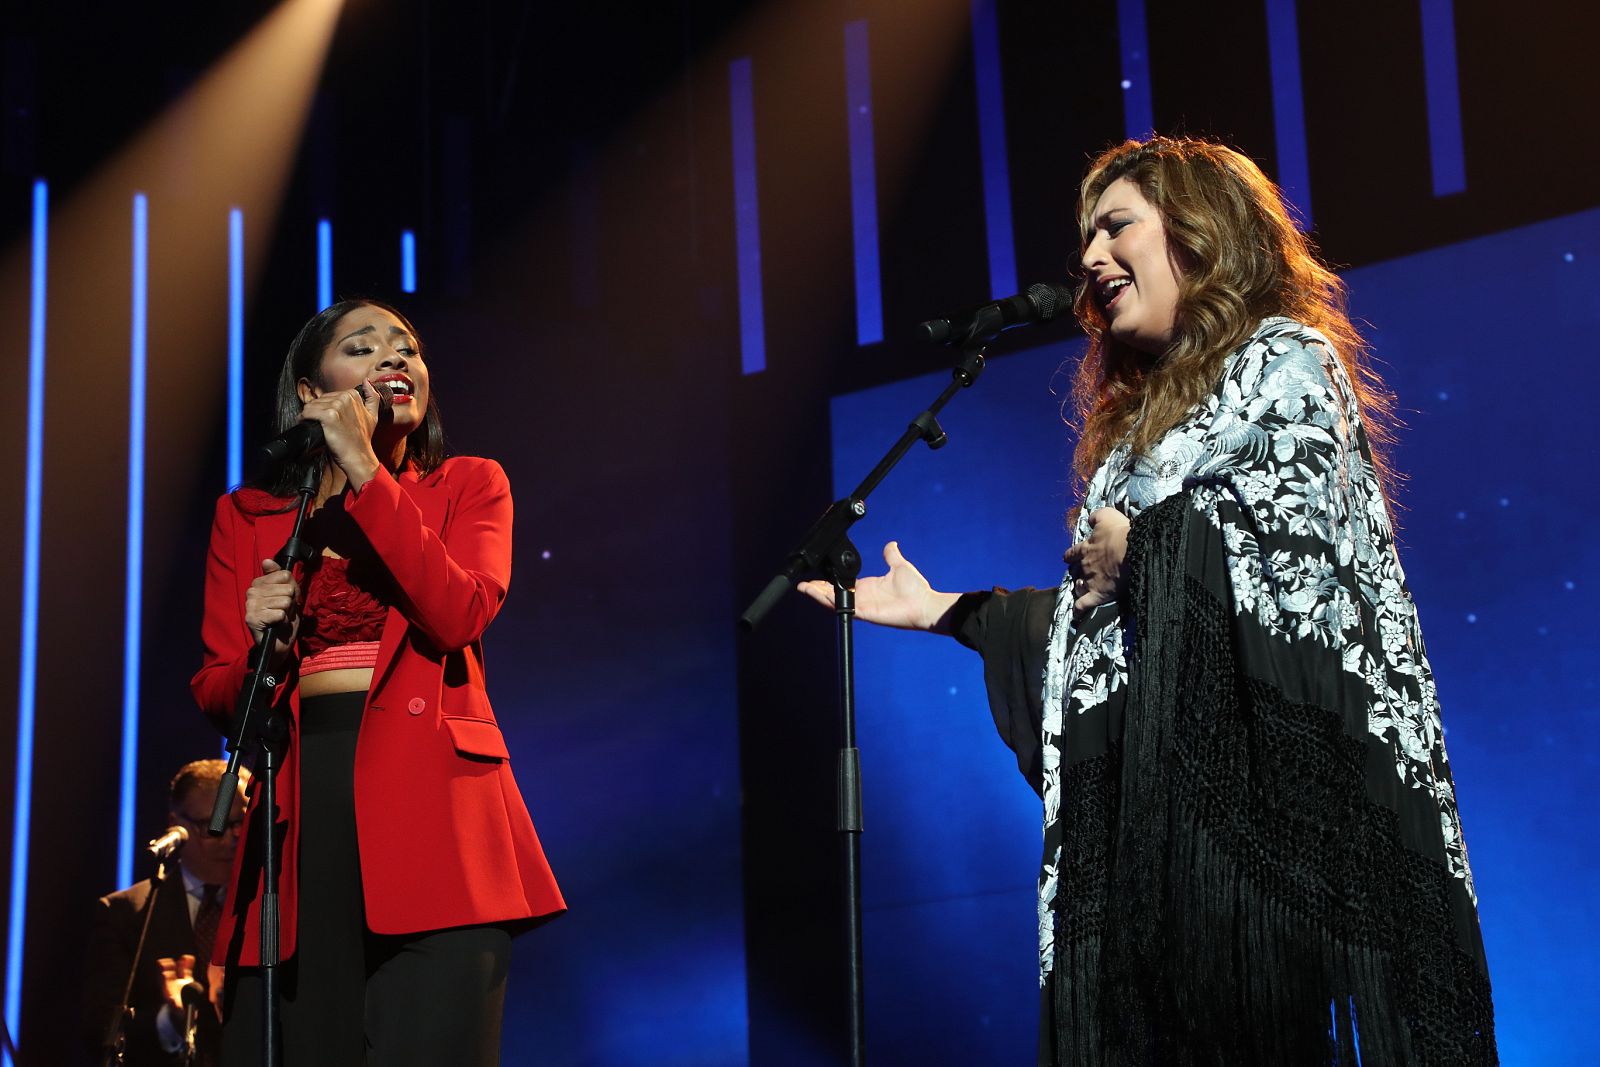 Estrella Morente y Nia cantan "Volver", de Carlos Gardel, en la Gala 6 de Operación Triunfo 2020